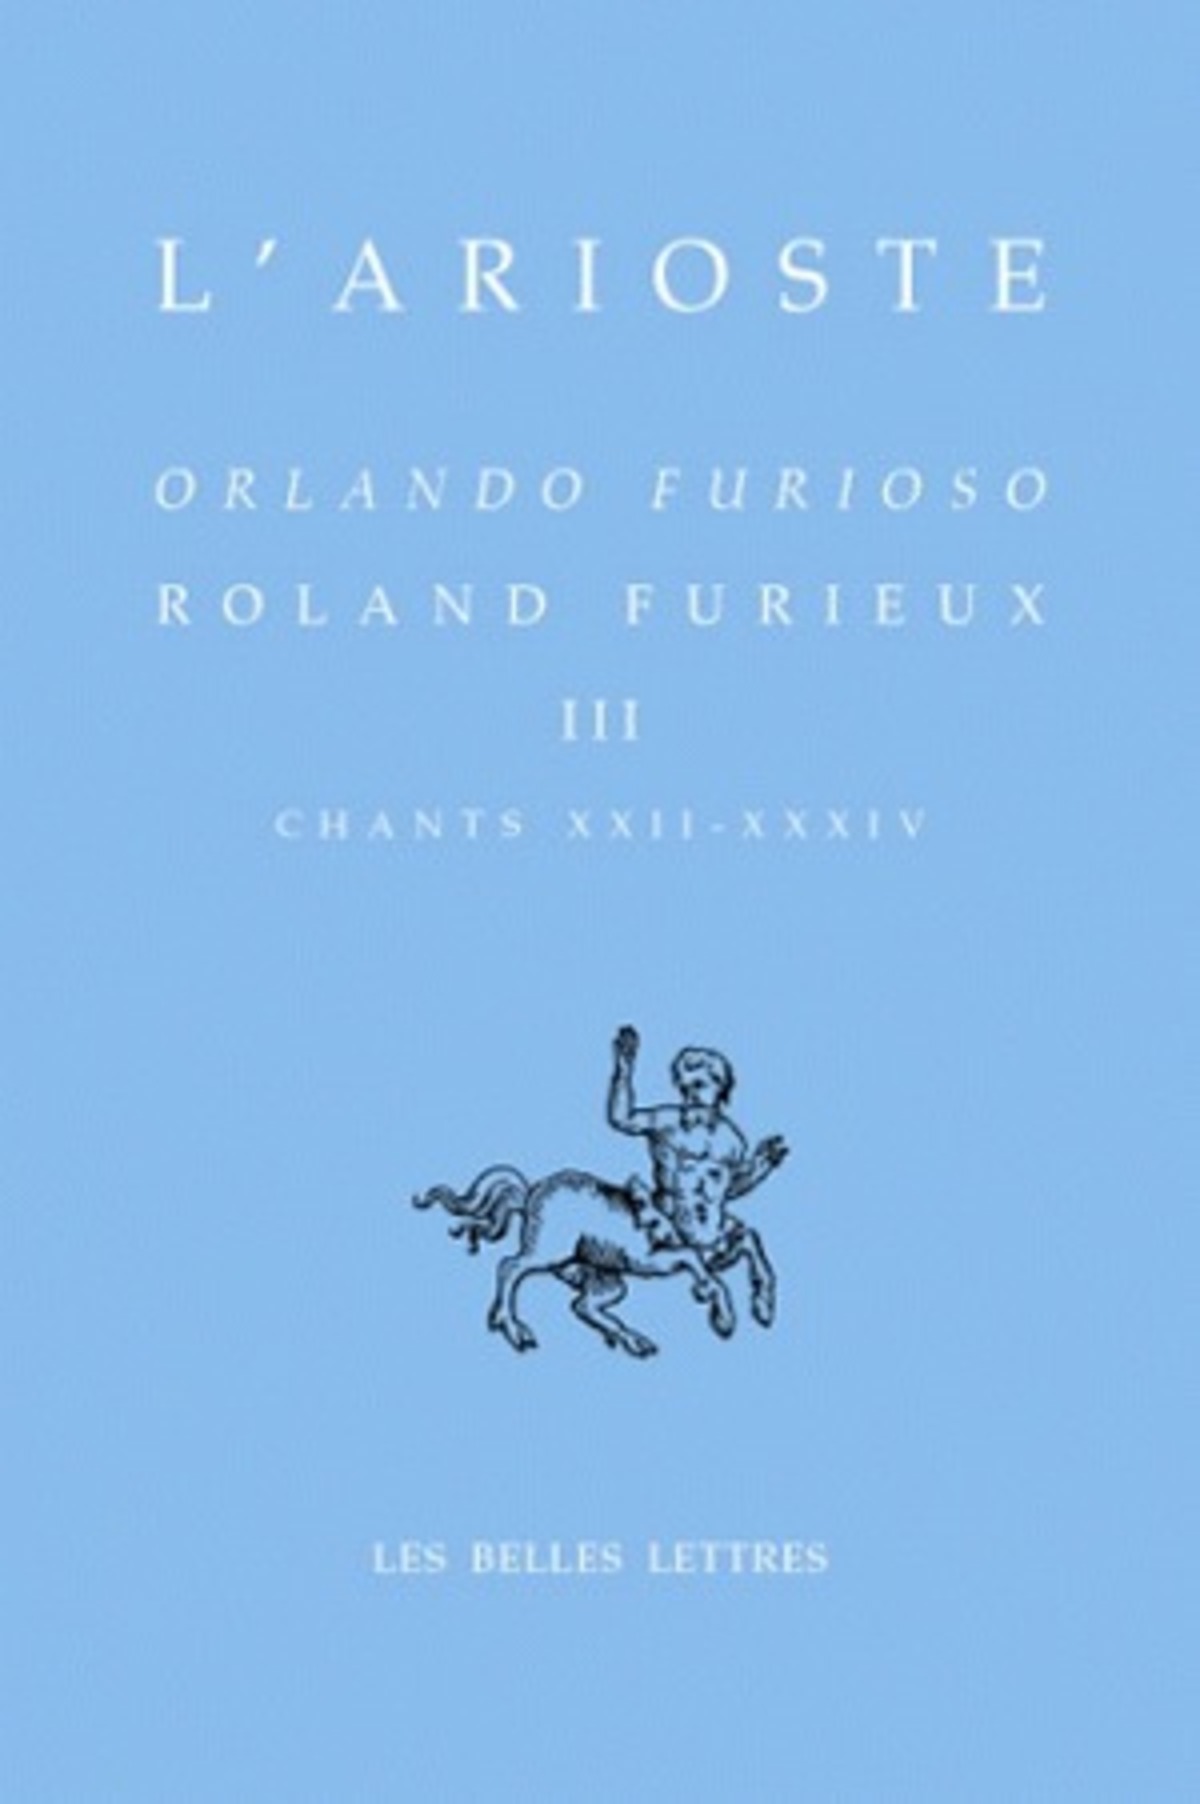 Roland Furieux - Orlando furioso. Tome III, Chants XXII-XXXIV